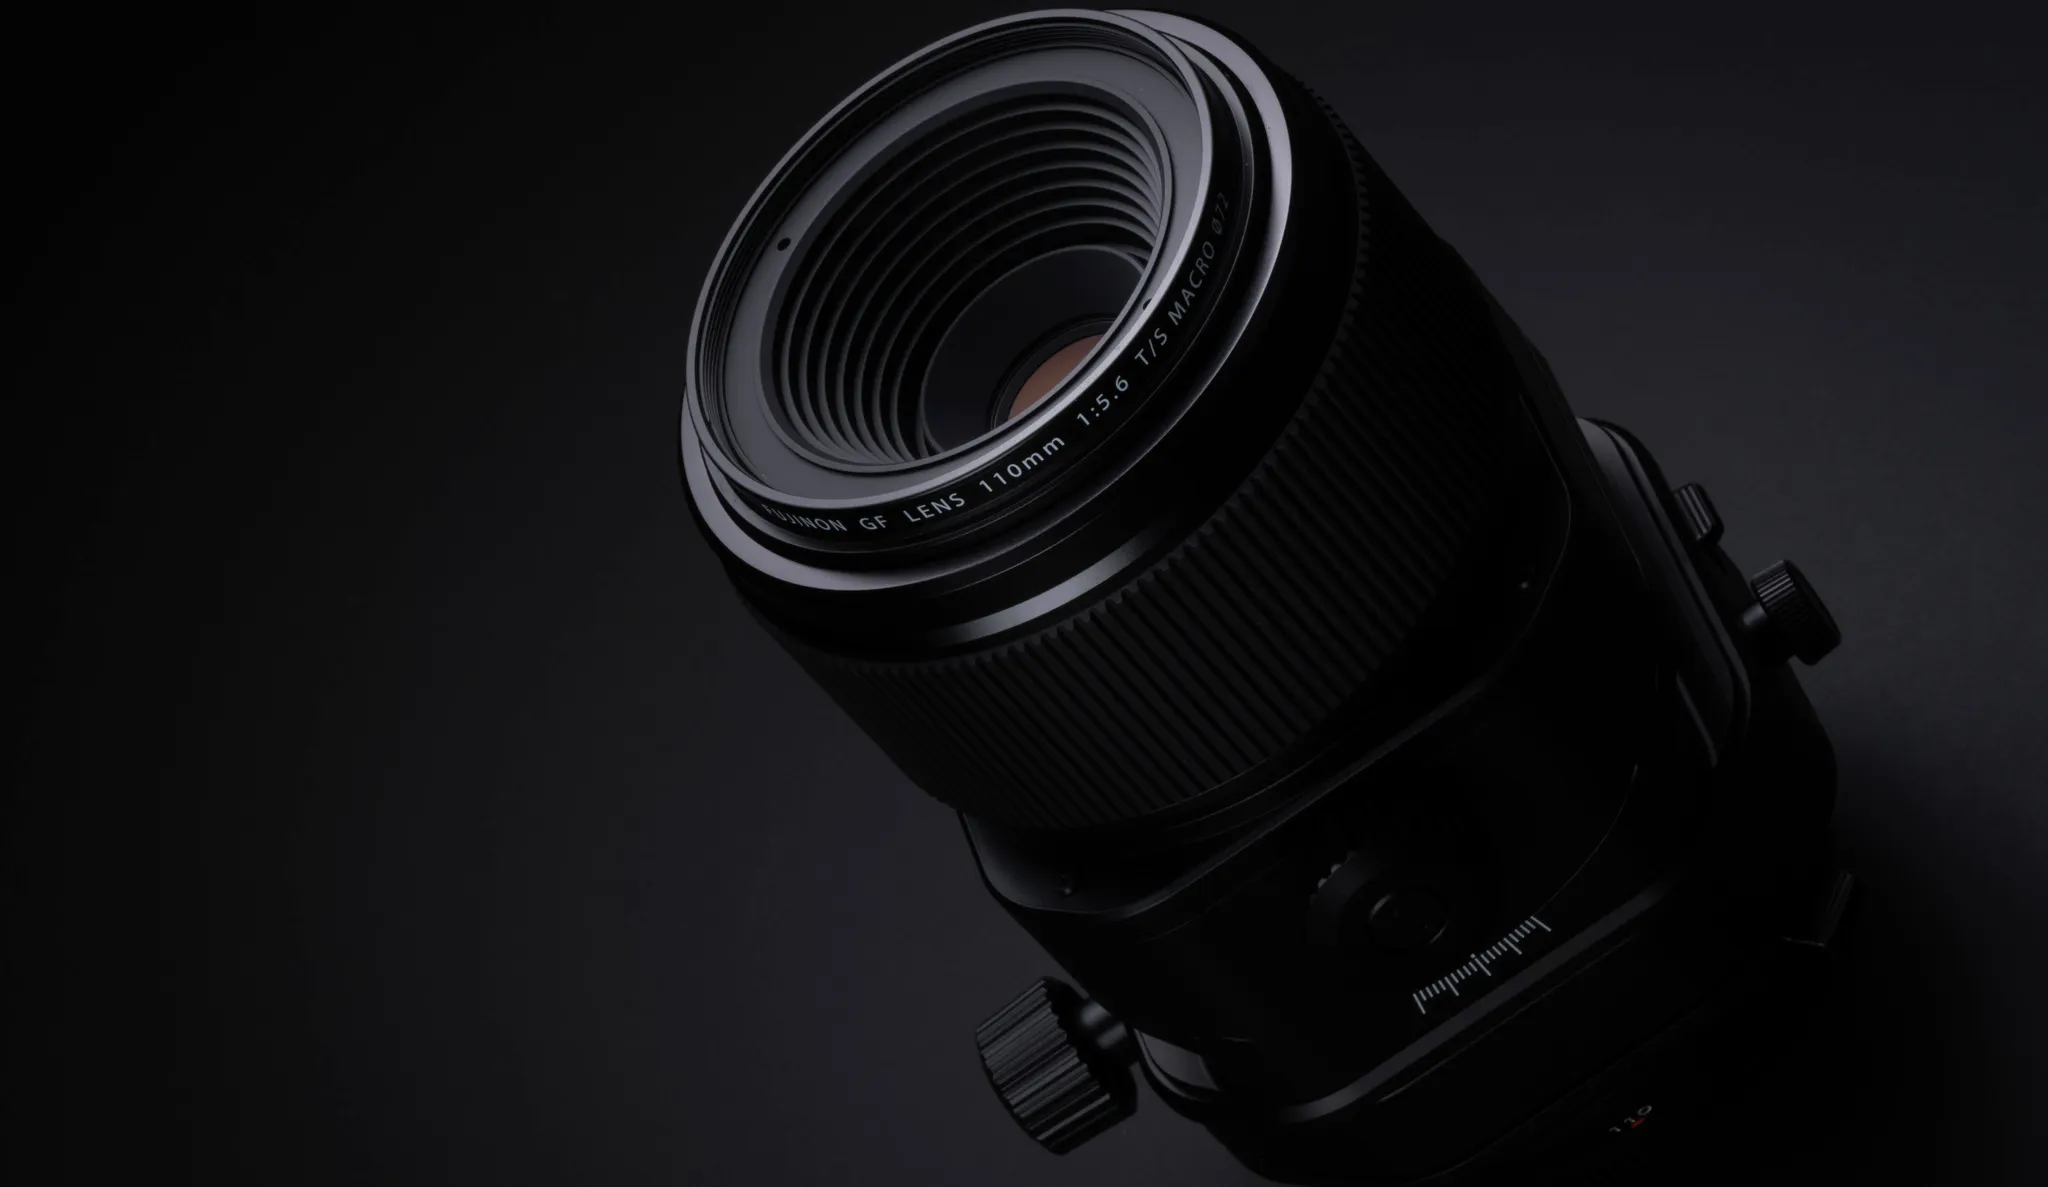 Ống kính Fujifilm GF 110mm F5.6 Tilt-Shift Macro